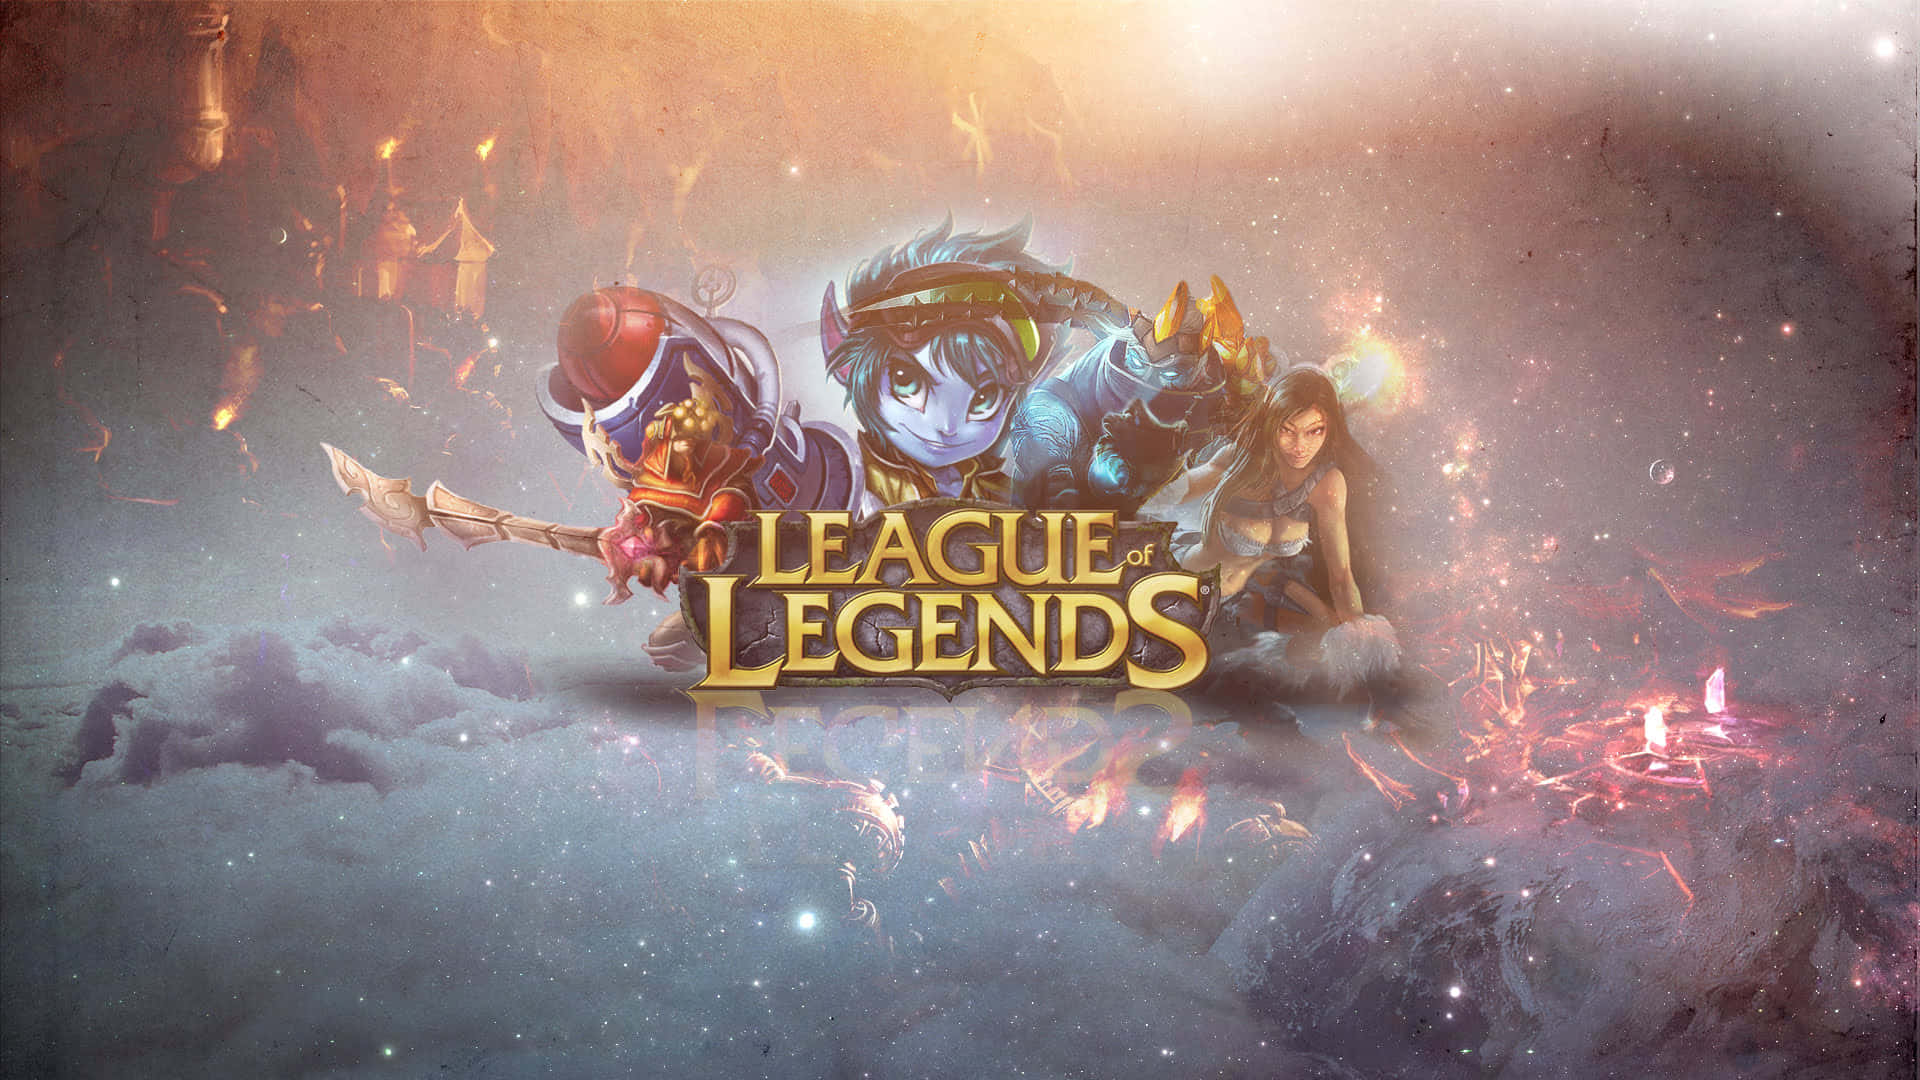 Elmoba Galardonado De Riot Games, League Of Legends, Lleva Los Videojuegos Al Siguiente Nivel.